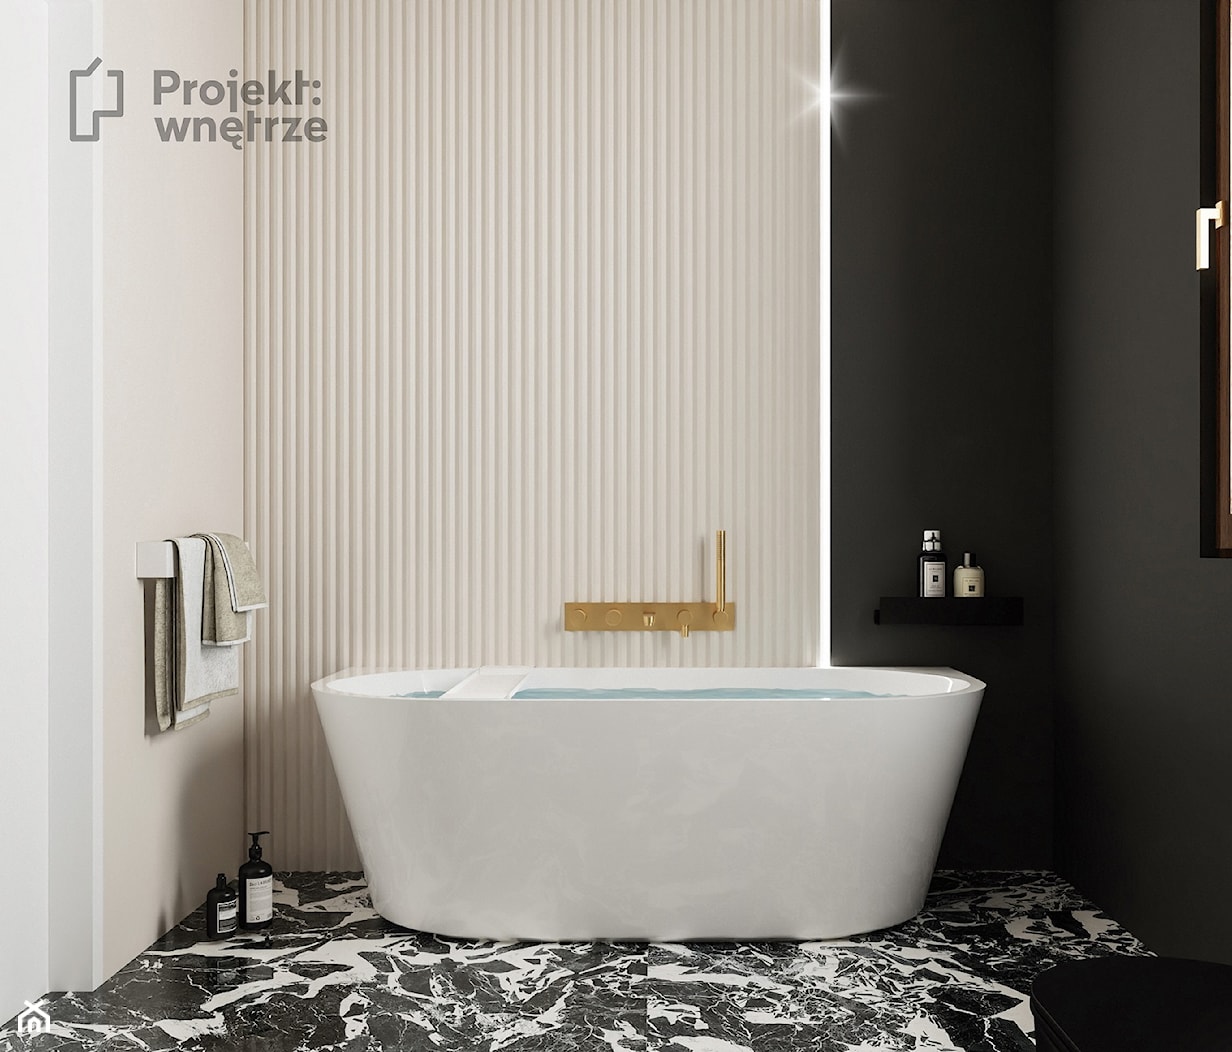 Mała łazienka z wanną przyścienną z oknem styl nowoczesny czarna beżowa płytki lamele oświetlenie ledowe złota armatura - zdjęcie od PROJEKT: WNĘTRZE - Homebook